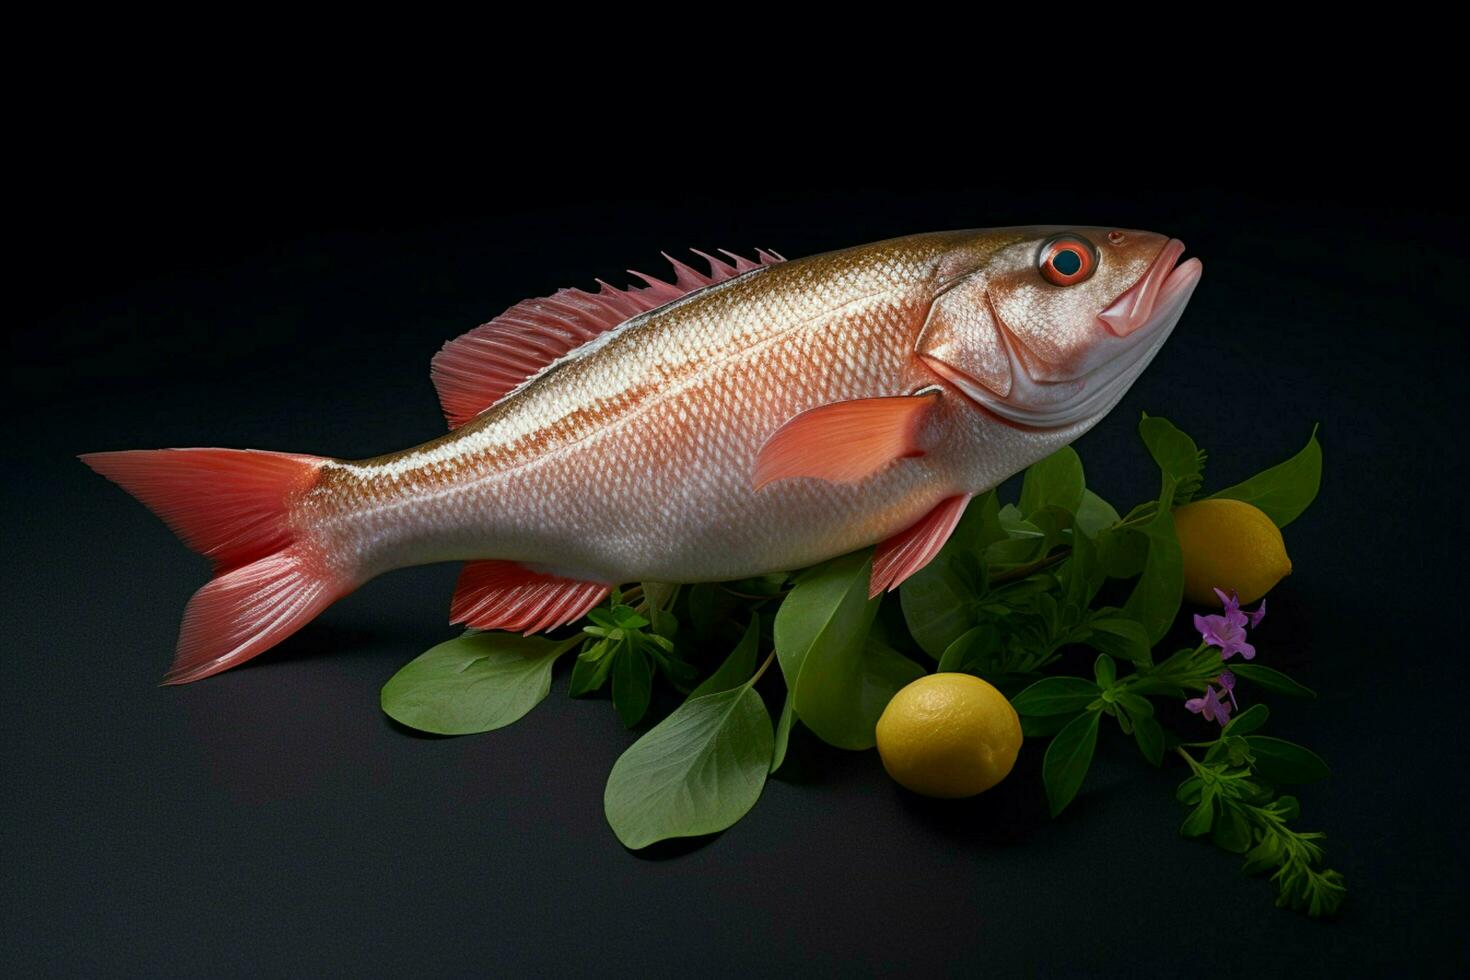 fotorrealista producto Disparo comida fotografía pescado foto